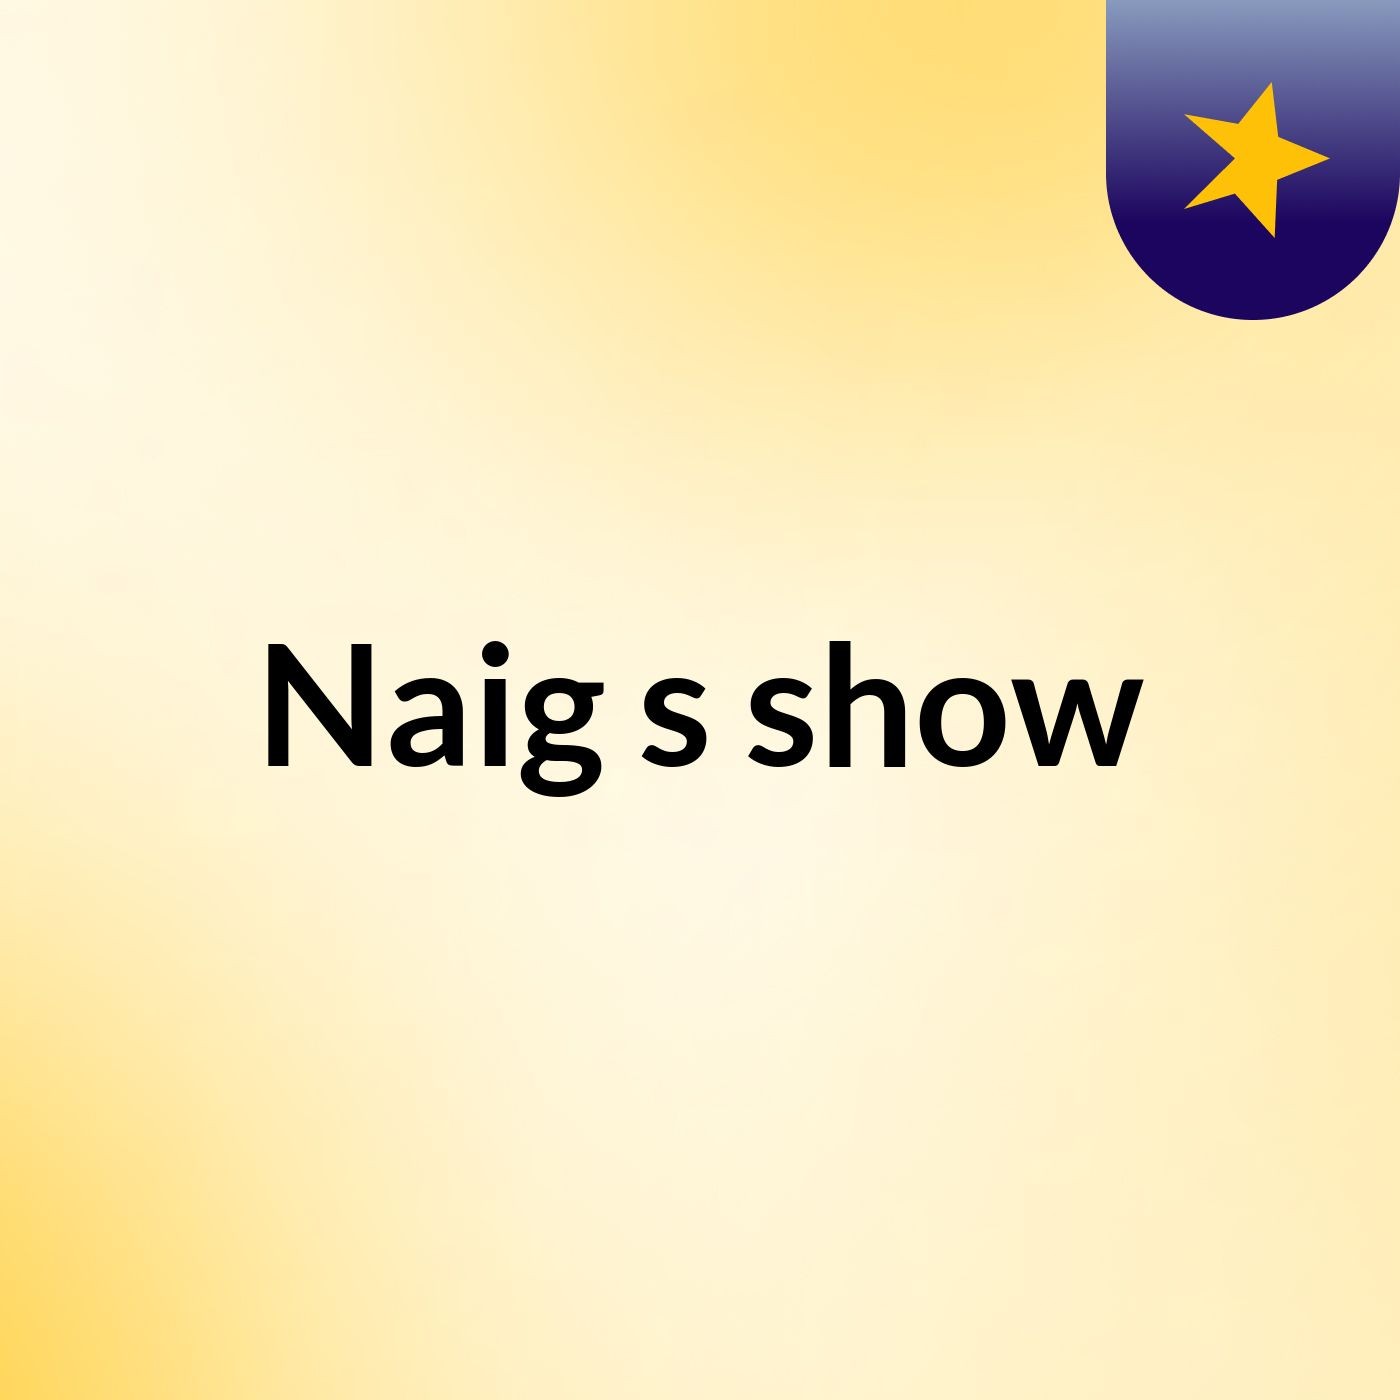 Naig's show